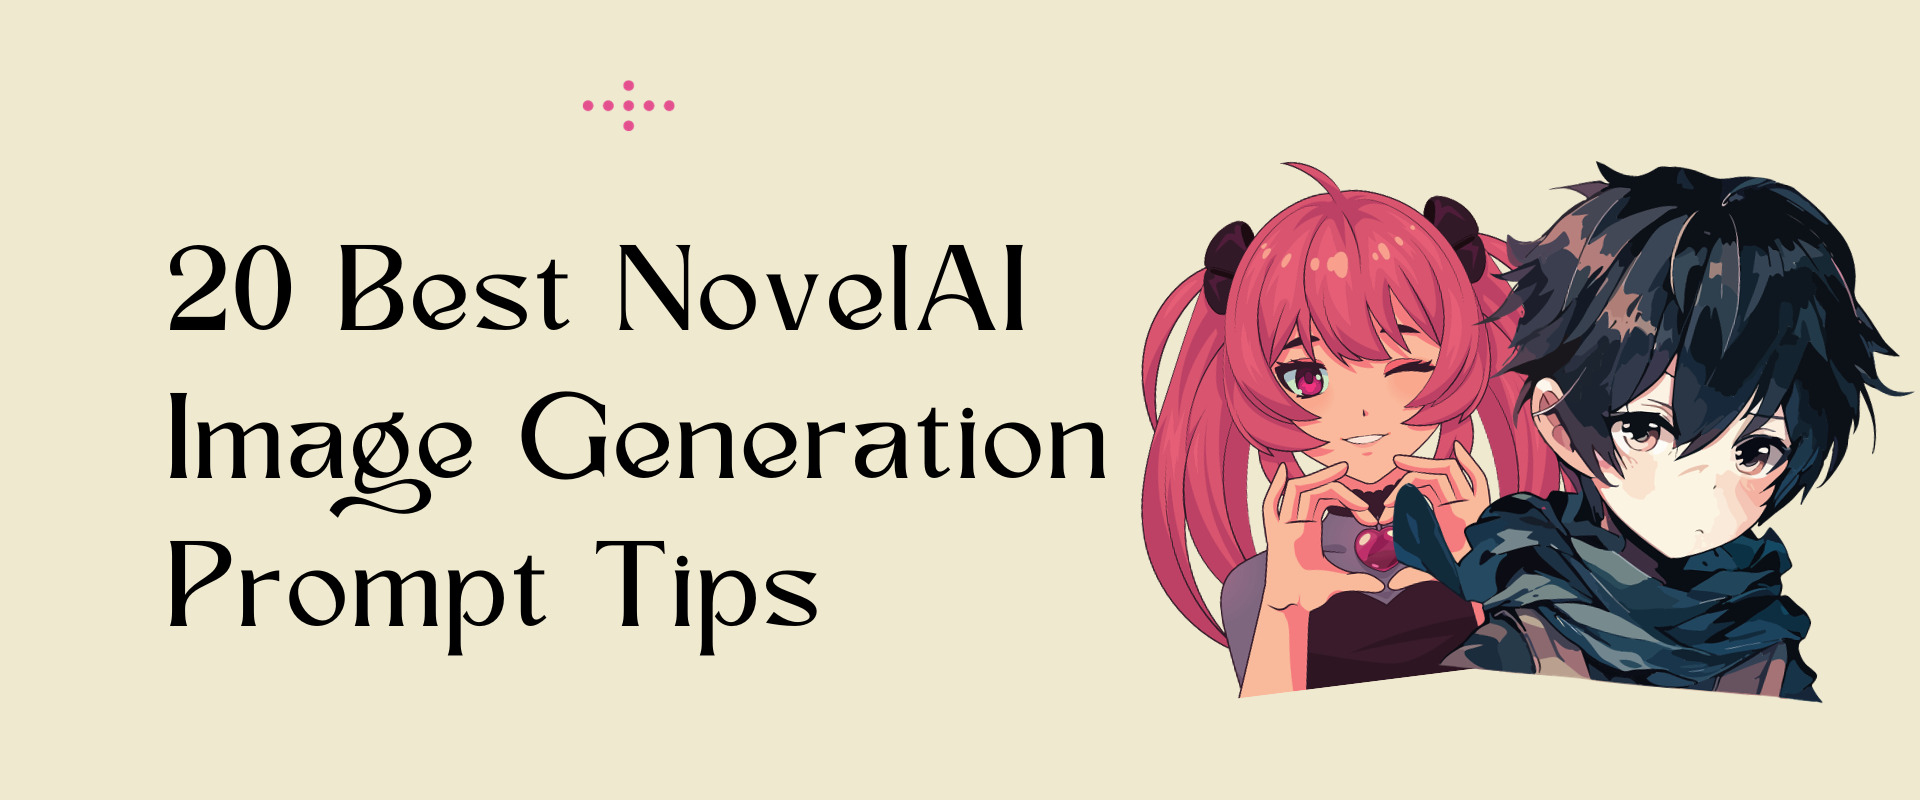 20 Best NovelAI Image Generation Prompt Tips